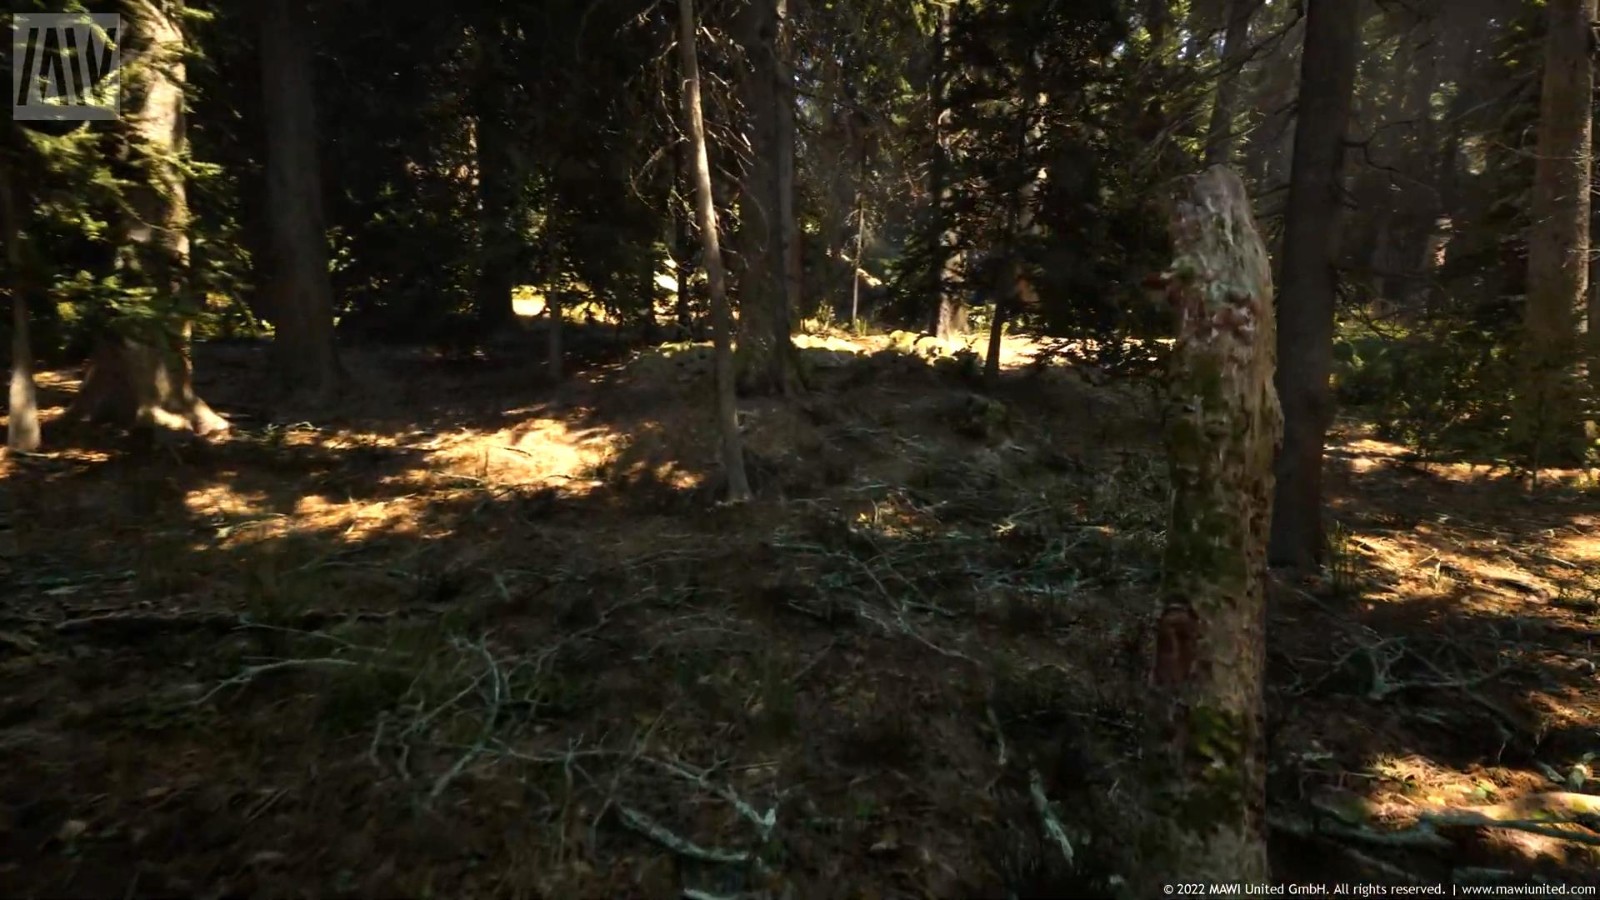 虛幻5引擎「針葉林」技術演示 畫面過於逼真